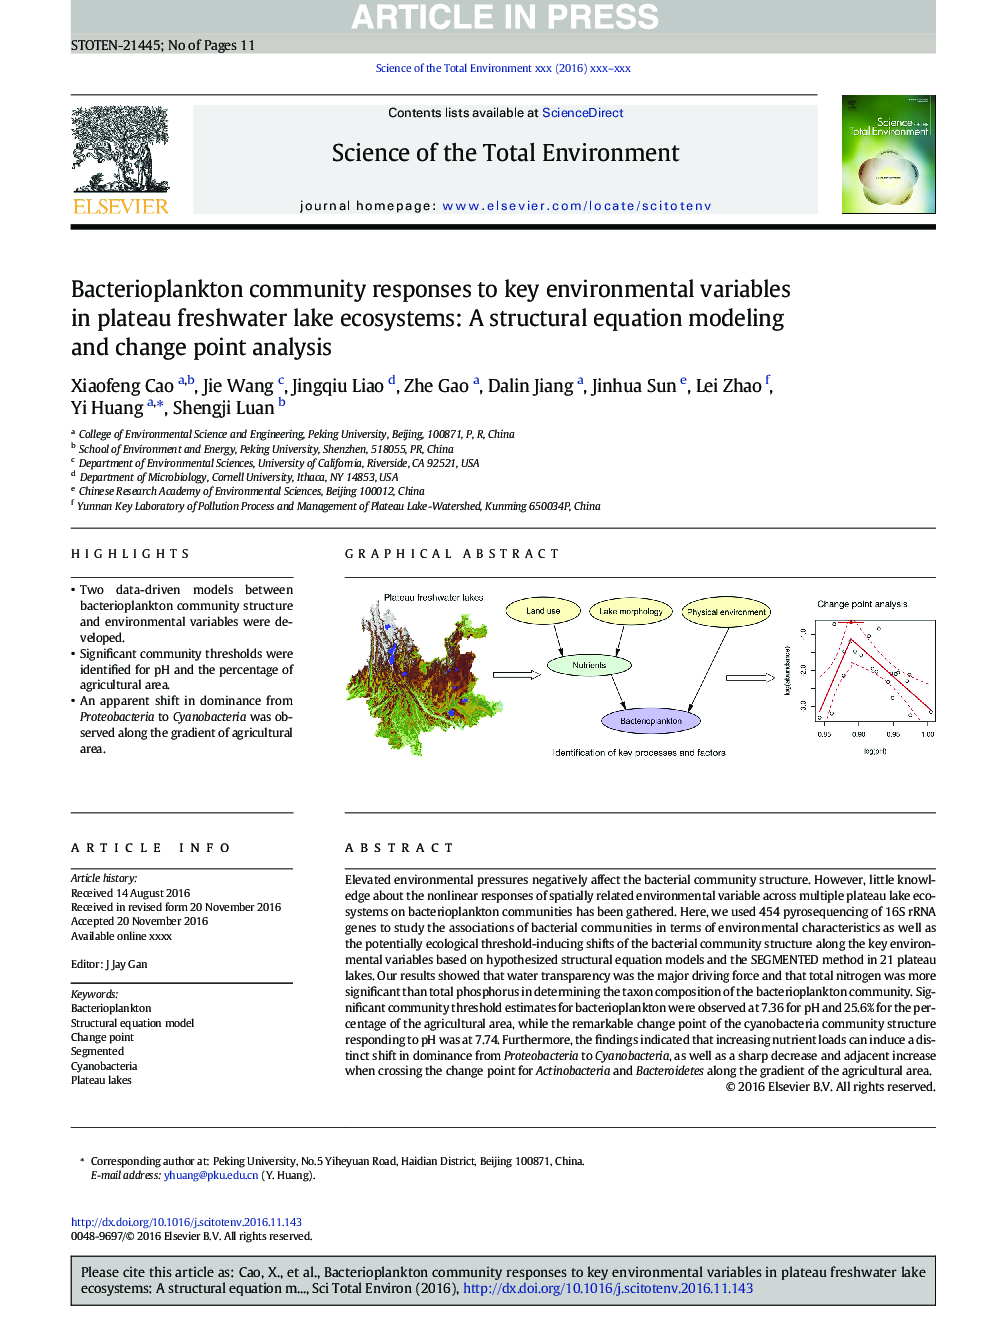 واکنش جامعه باکتریوپلانکتون به متغیرهای کلیدی محیطی در اکوسیستم های دریاچه رودخانه آبهای زیرزمینی: یک مدلسازی معادلات ساختاری و تحلیل نقطه تغییر 